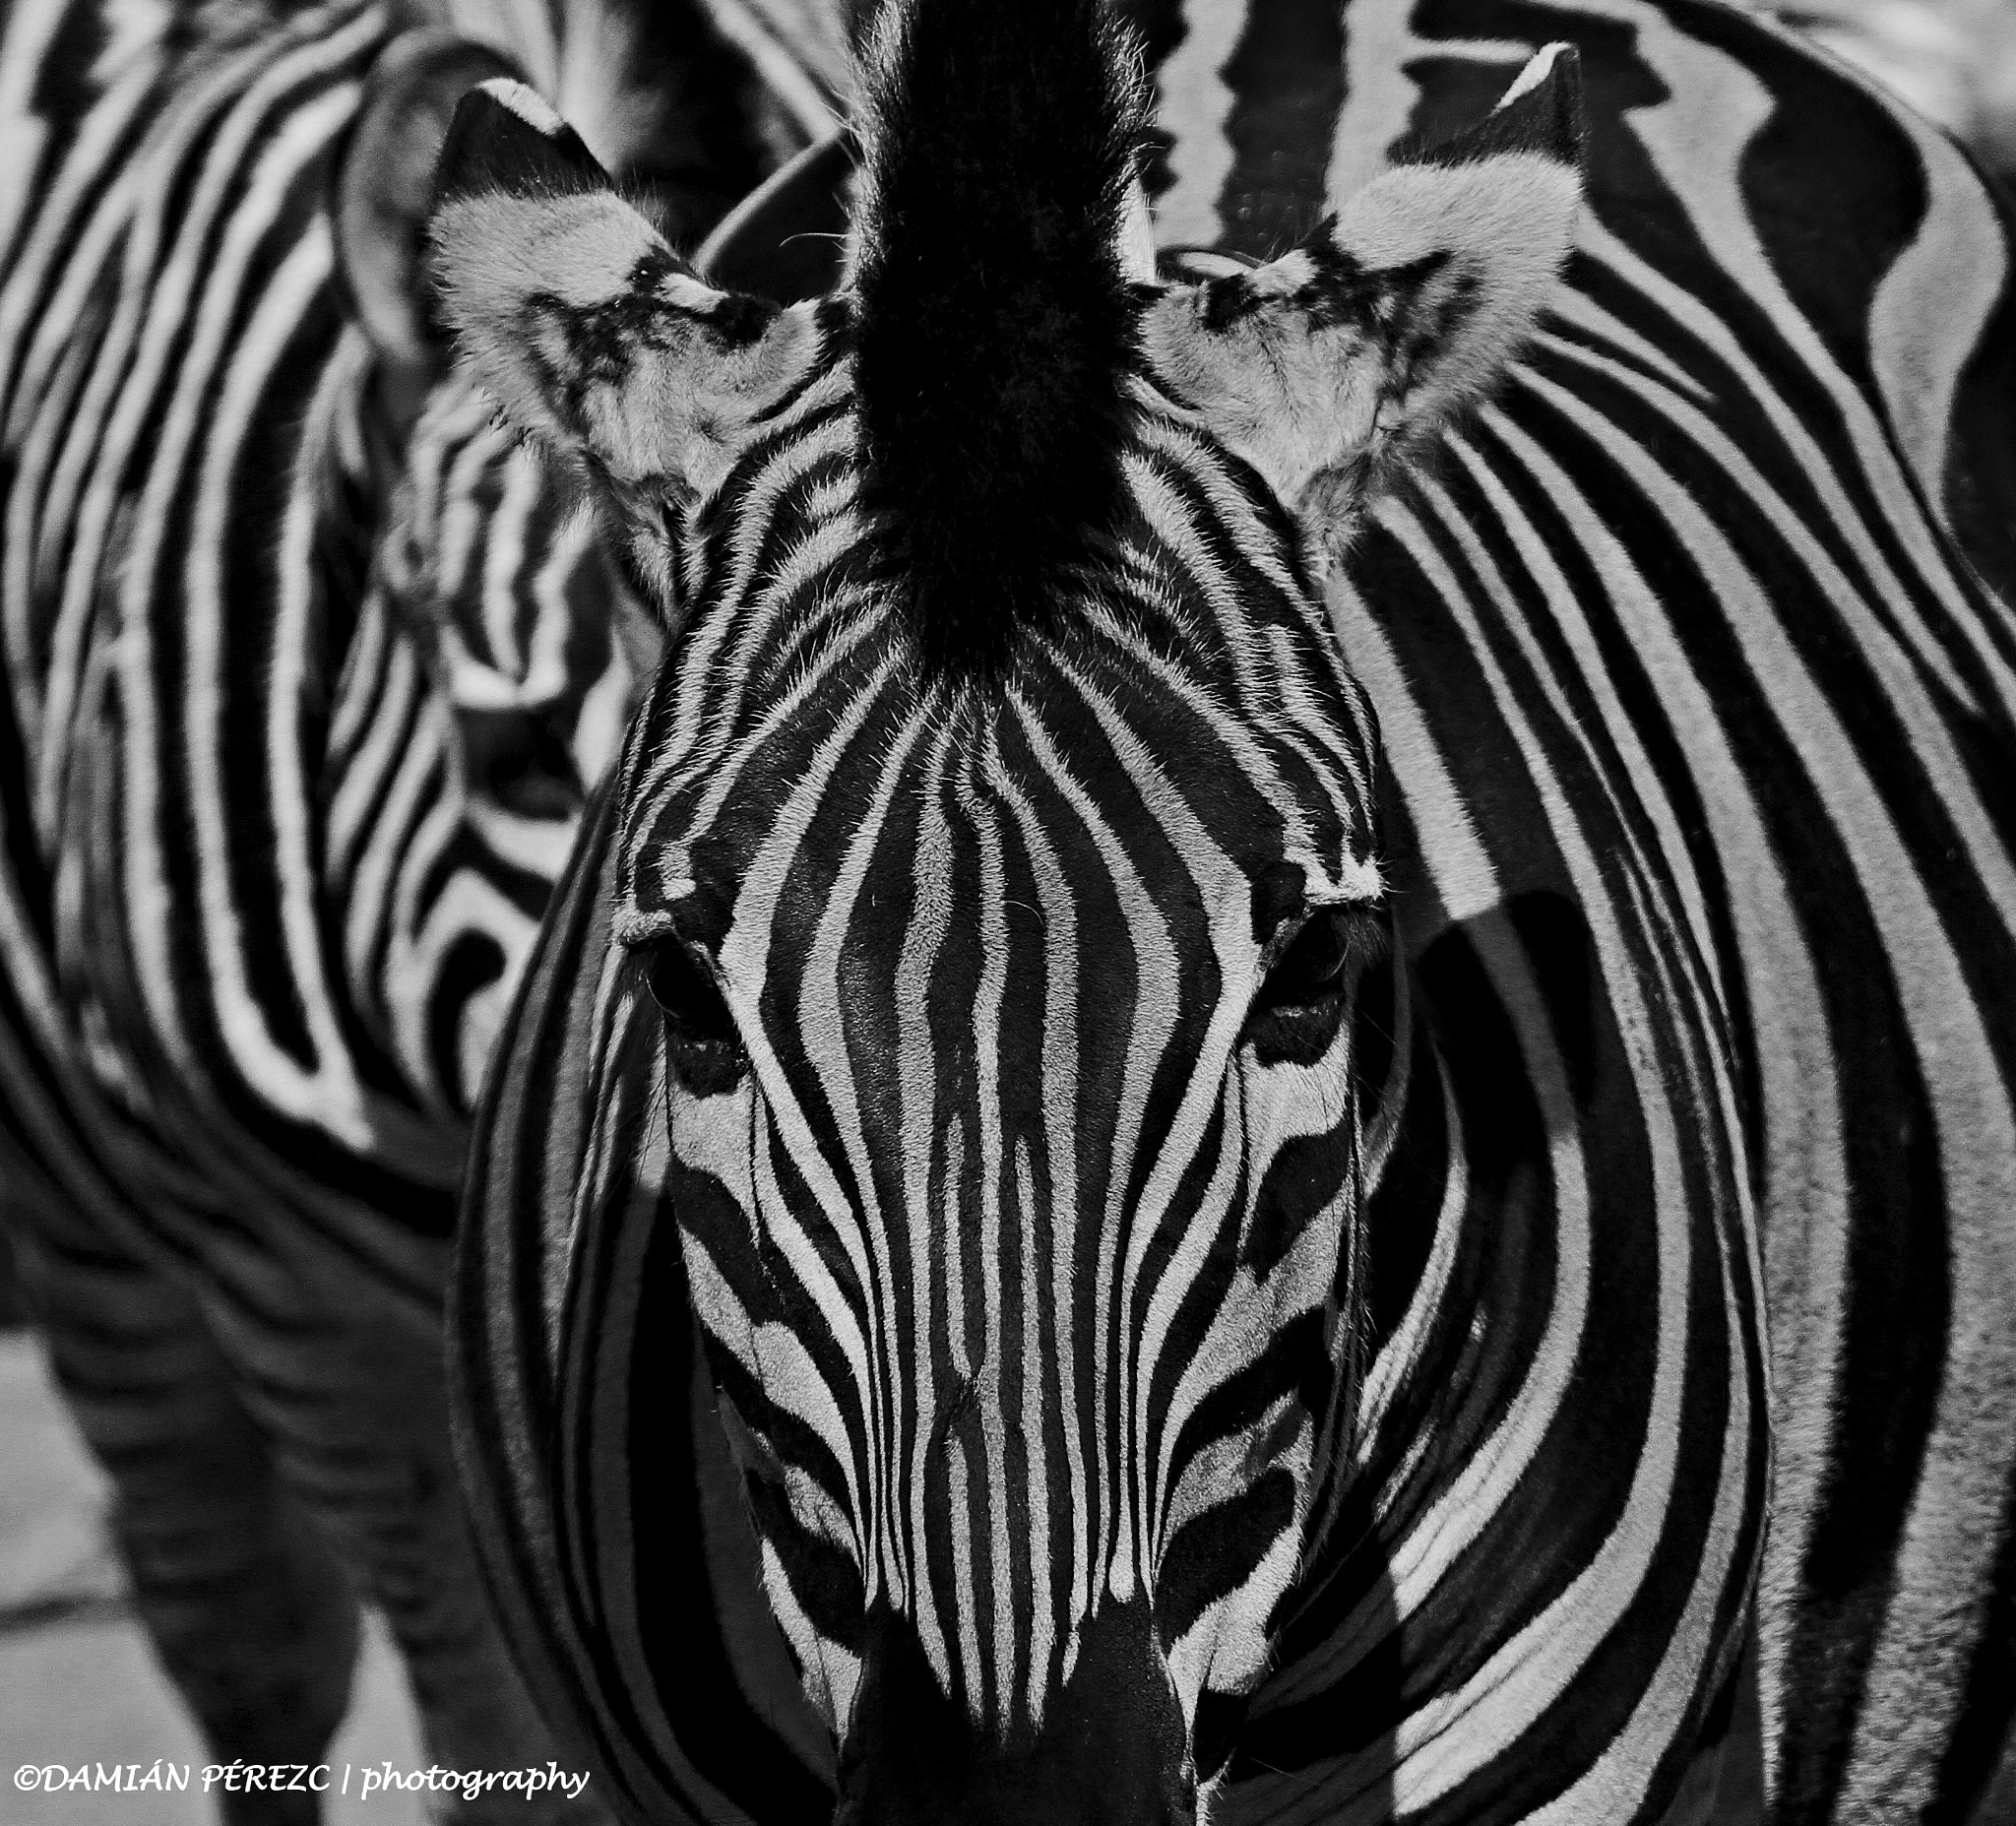 Canon EOS 7D sample photo. Zebra portrait photography